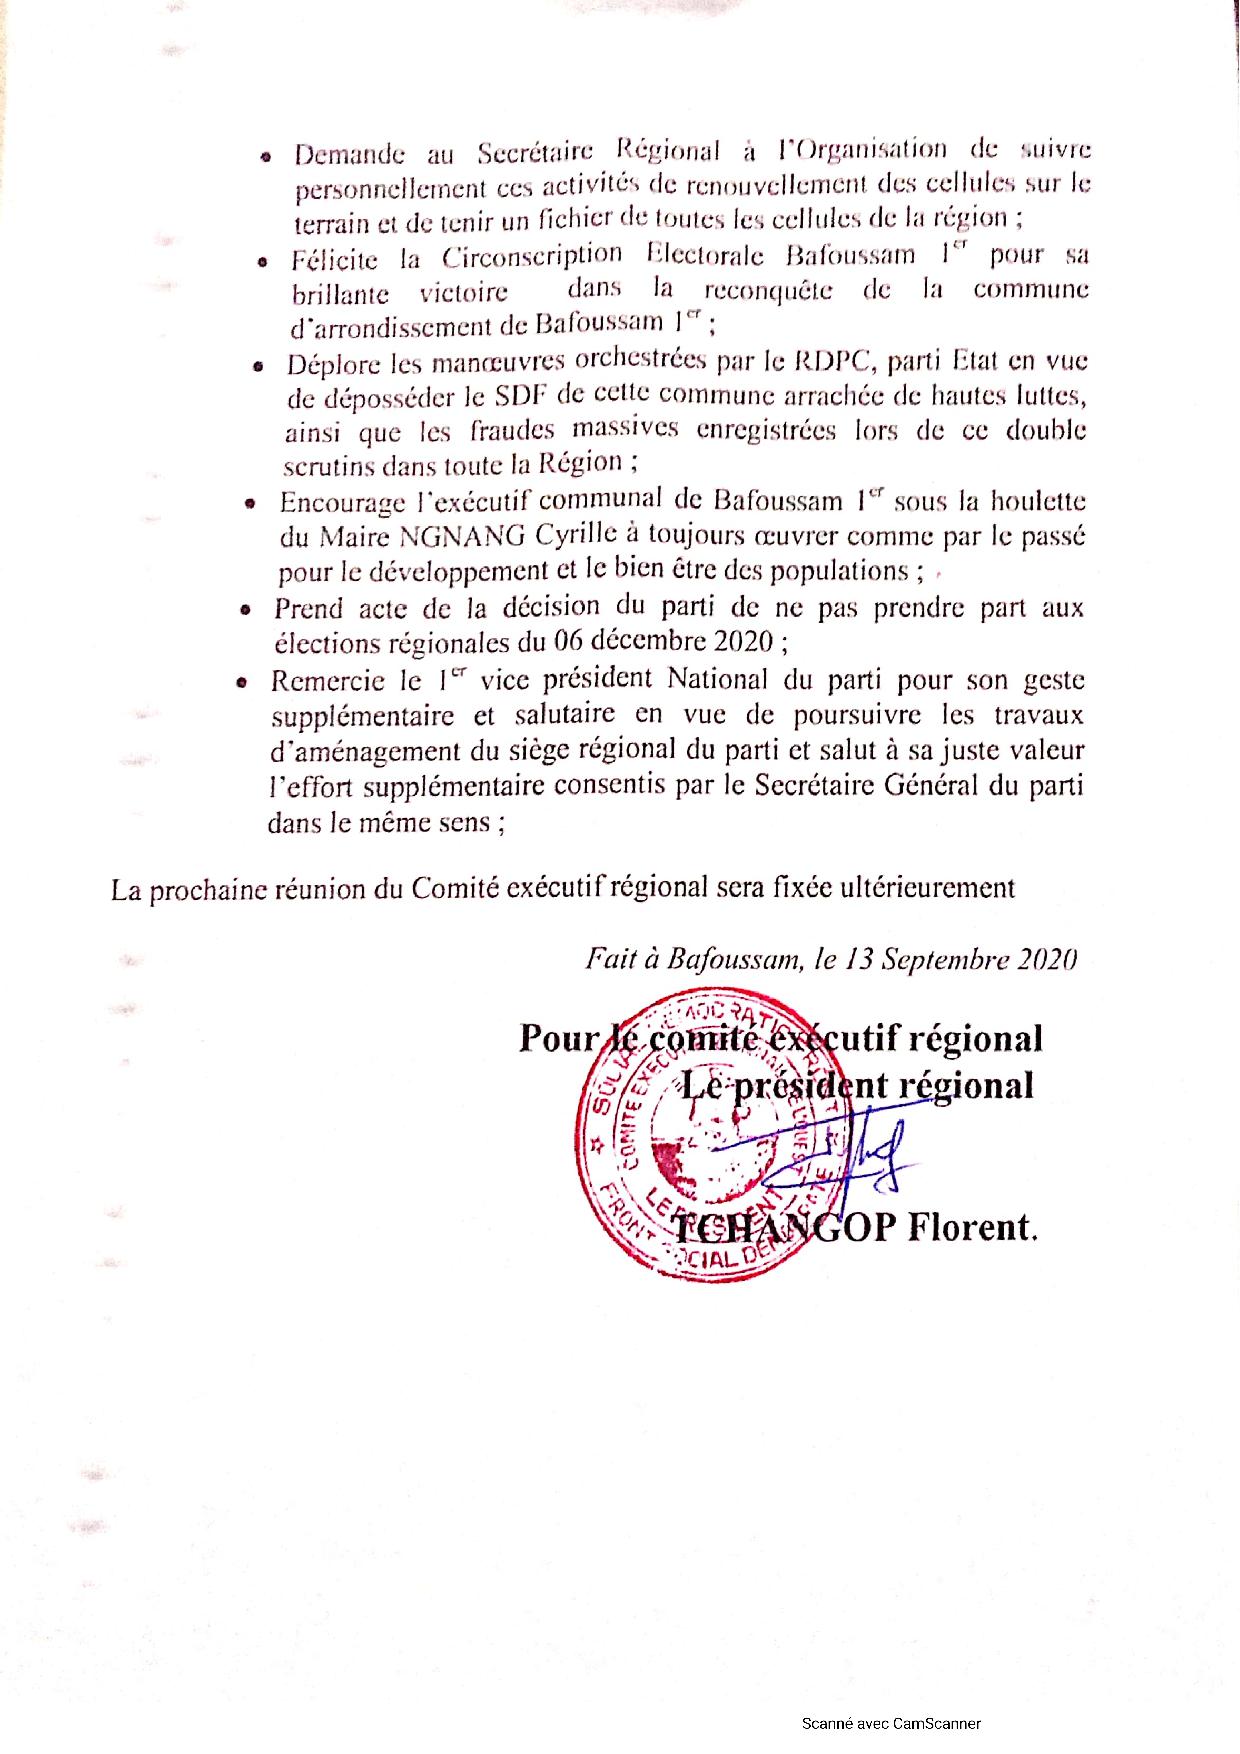 Résolutions de la réunion du Comité Exécutif Régional SDF OUEST du 13 septembre 2020 à Bafoussam